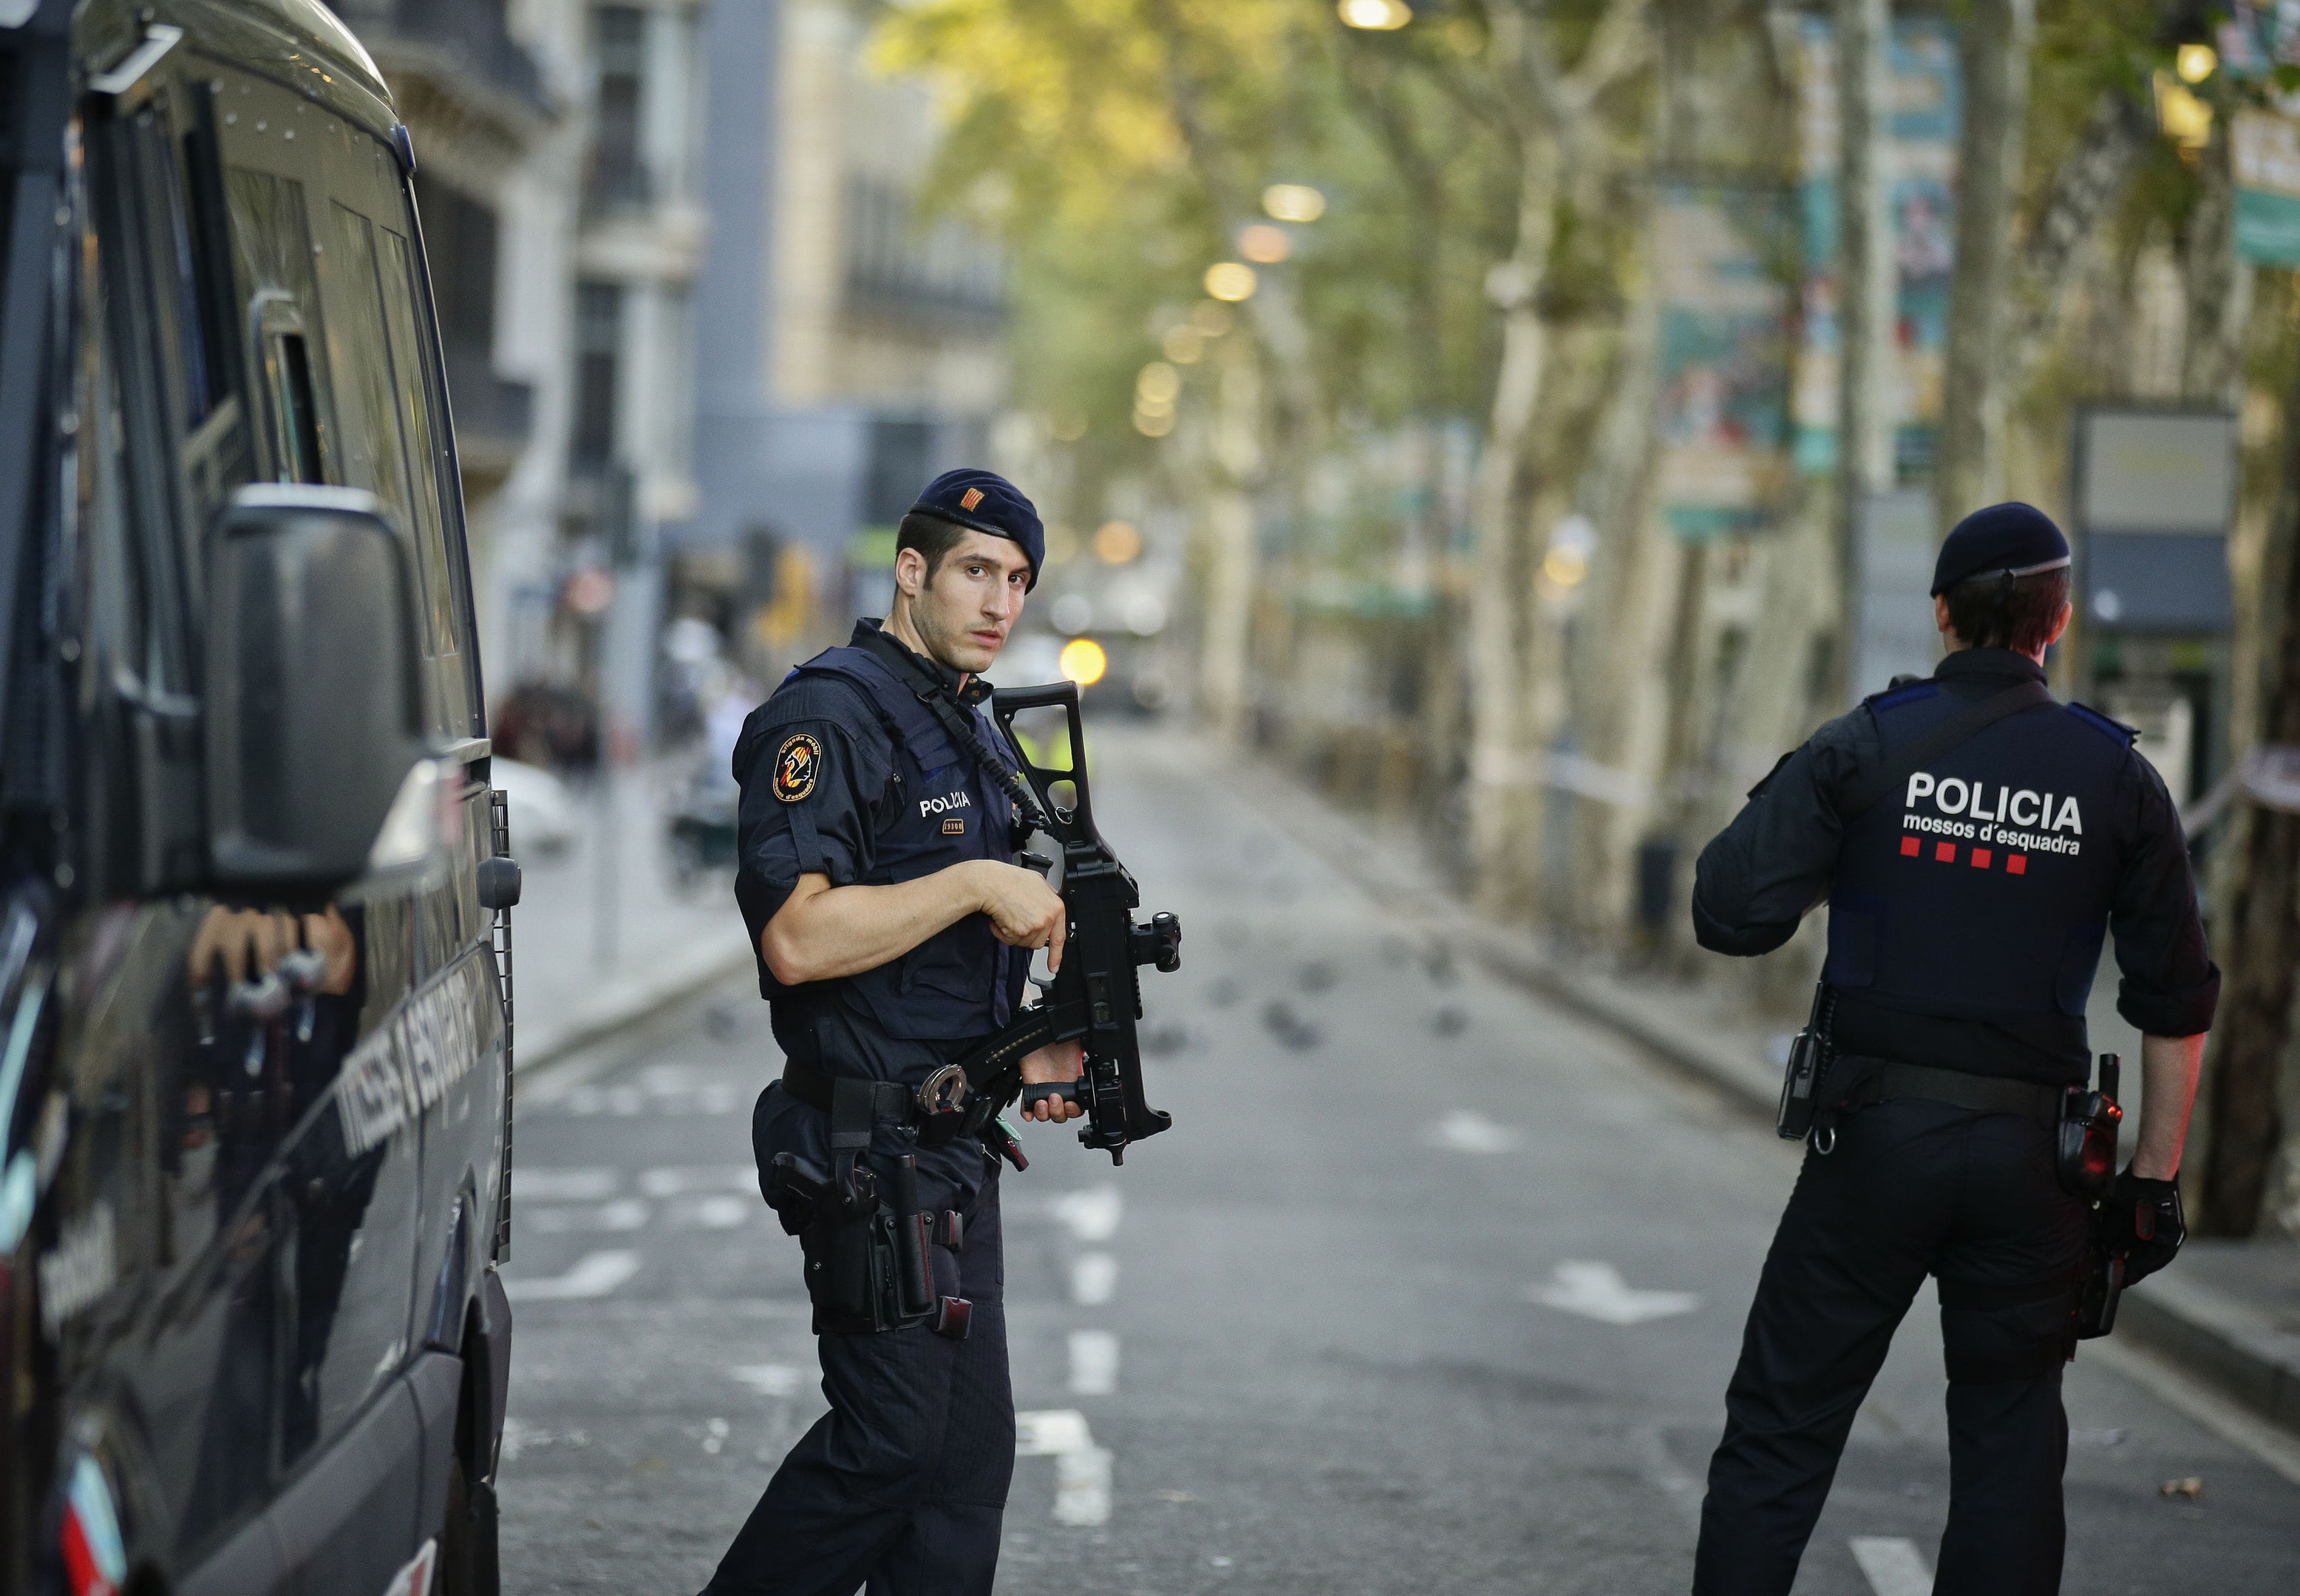 Armed police officers patrol a deserted street in Las Ramblas, in Barcelona, Spain